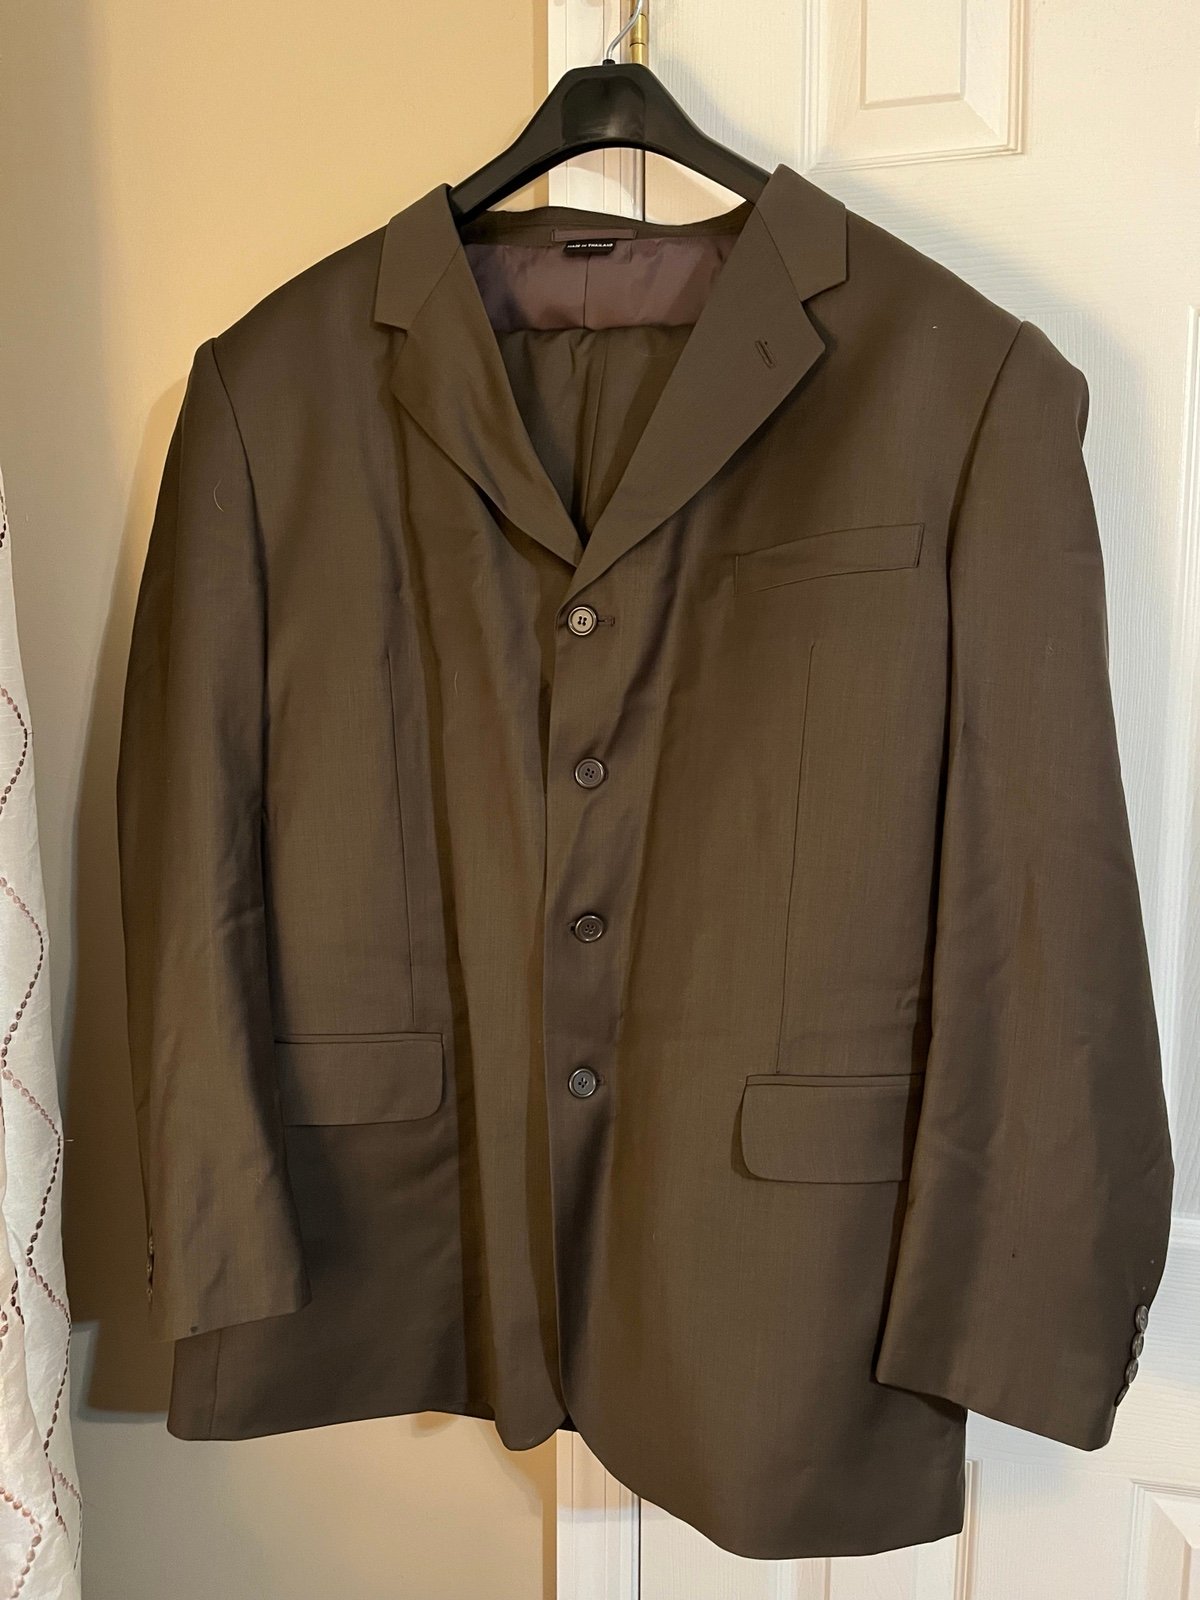 Gianco Polo men’s suit. 100% wool 48L gxp3xtne6